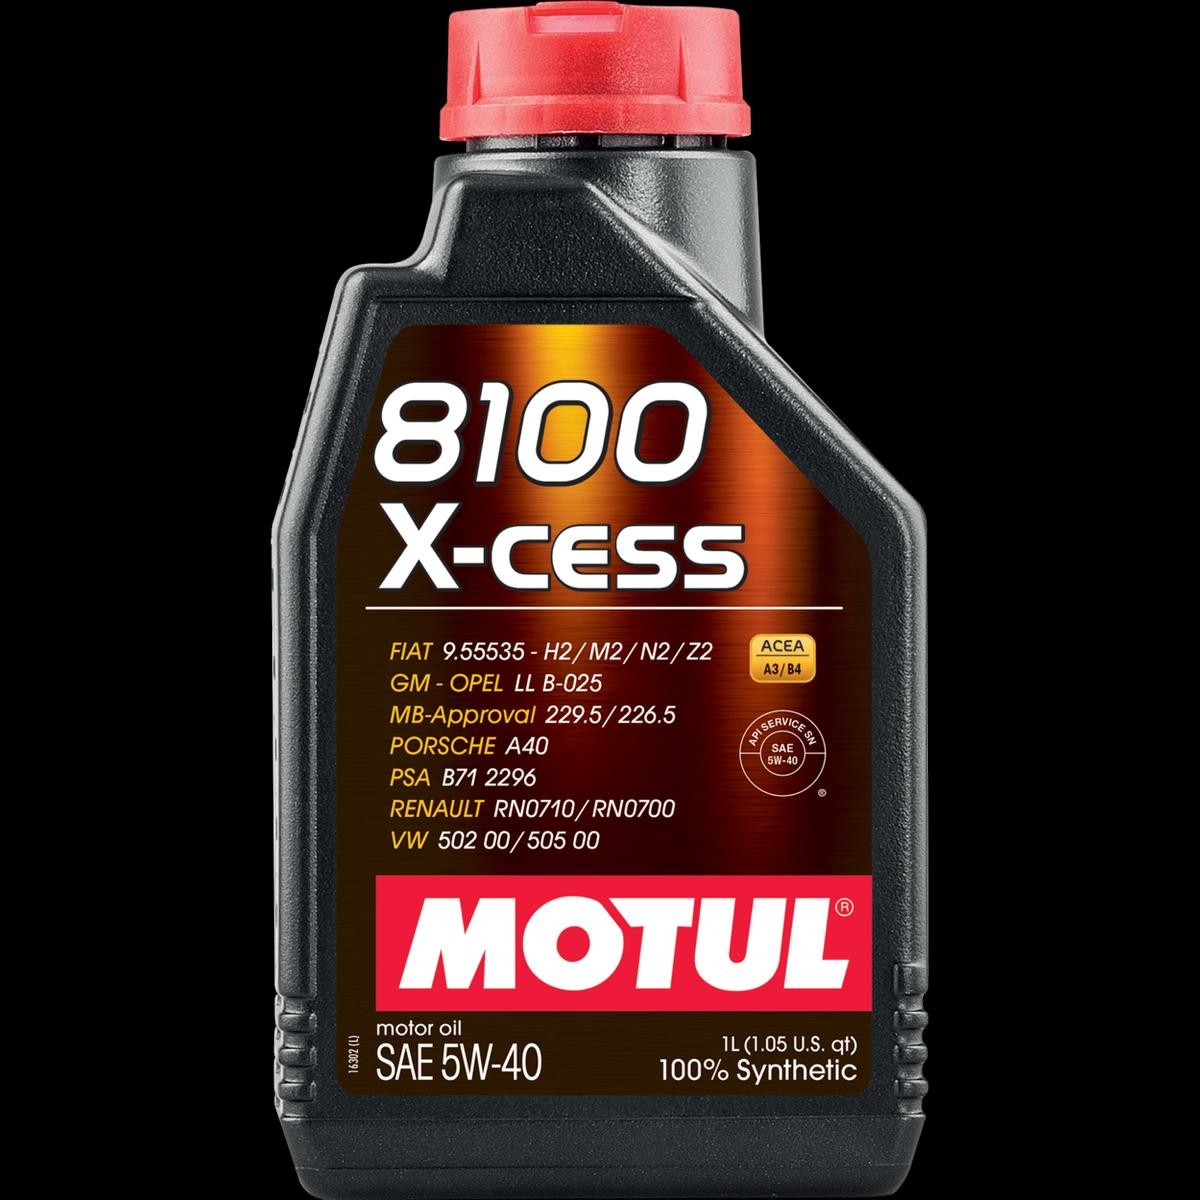 MOTUL 8100, X-cess 5W-40, 1l Motor oil 109229 buy